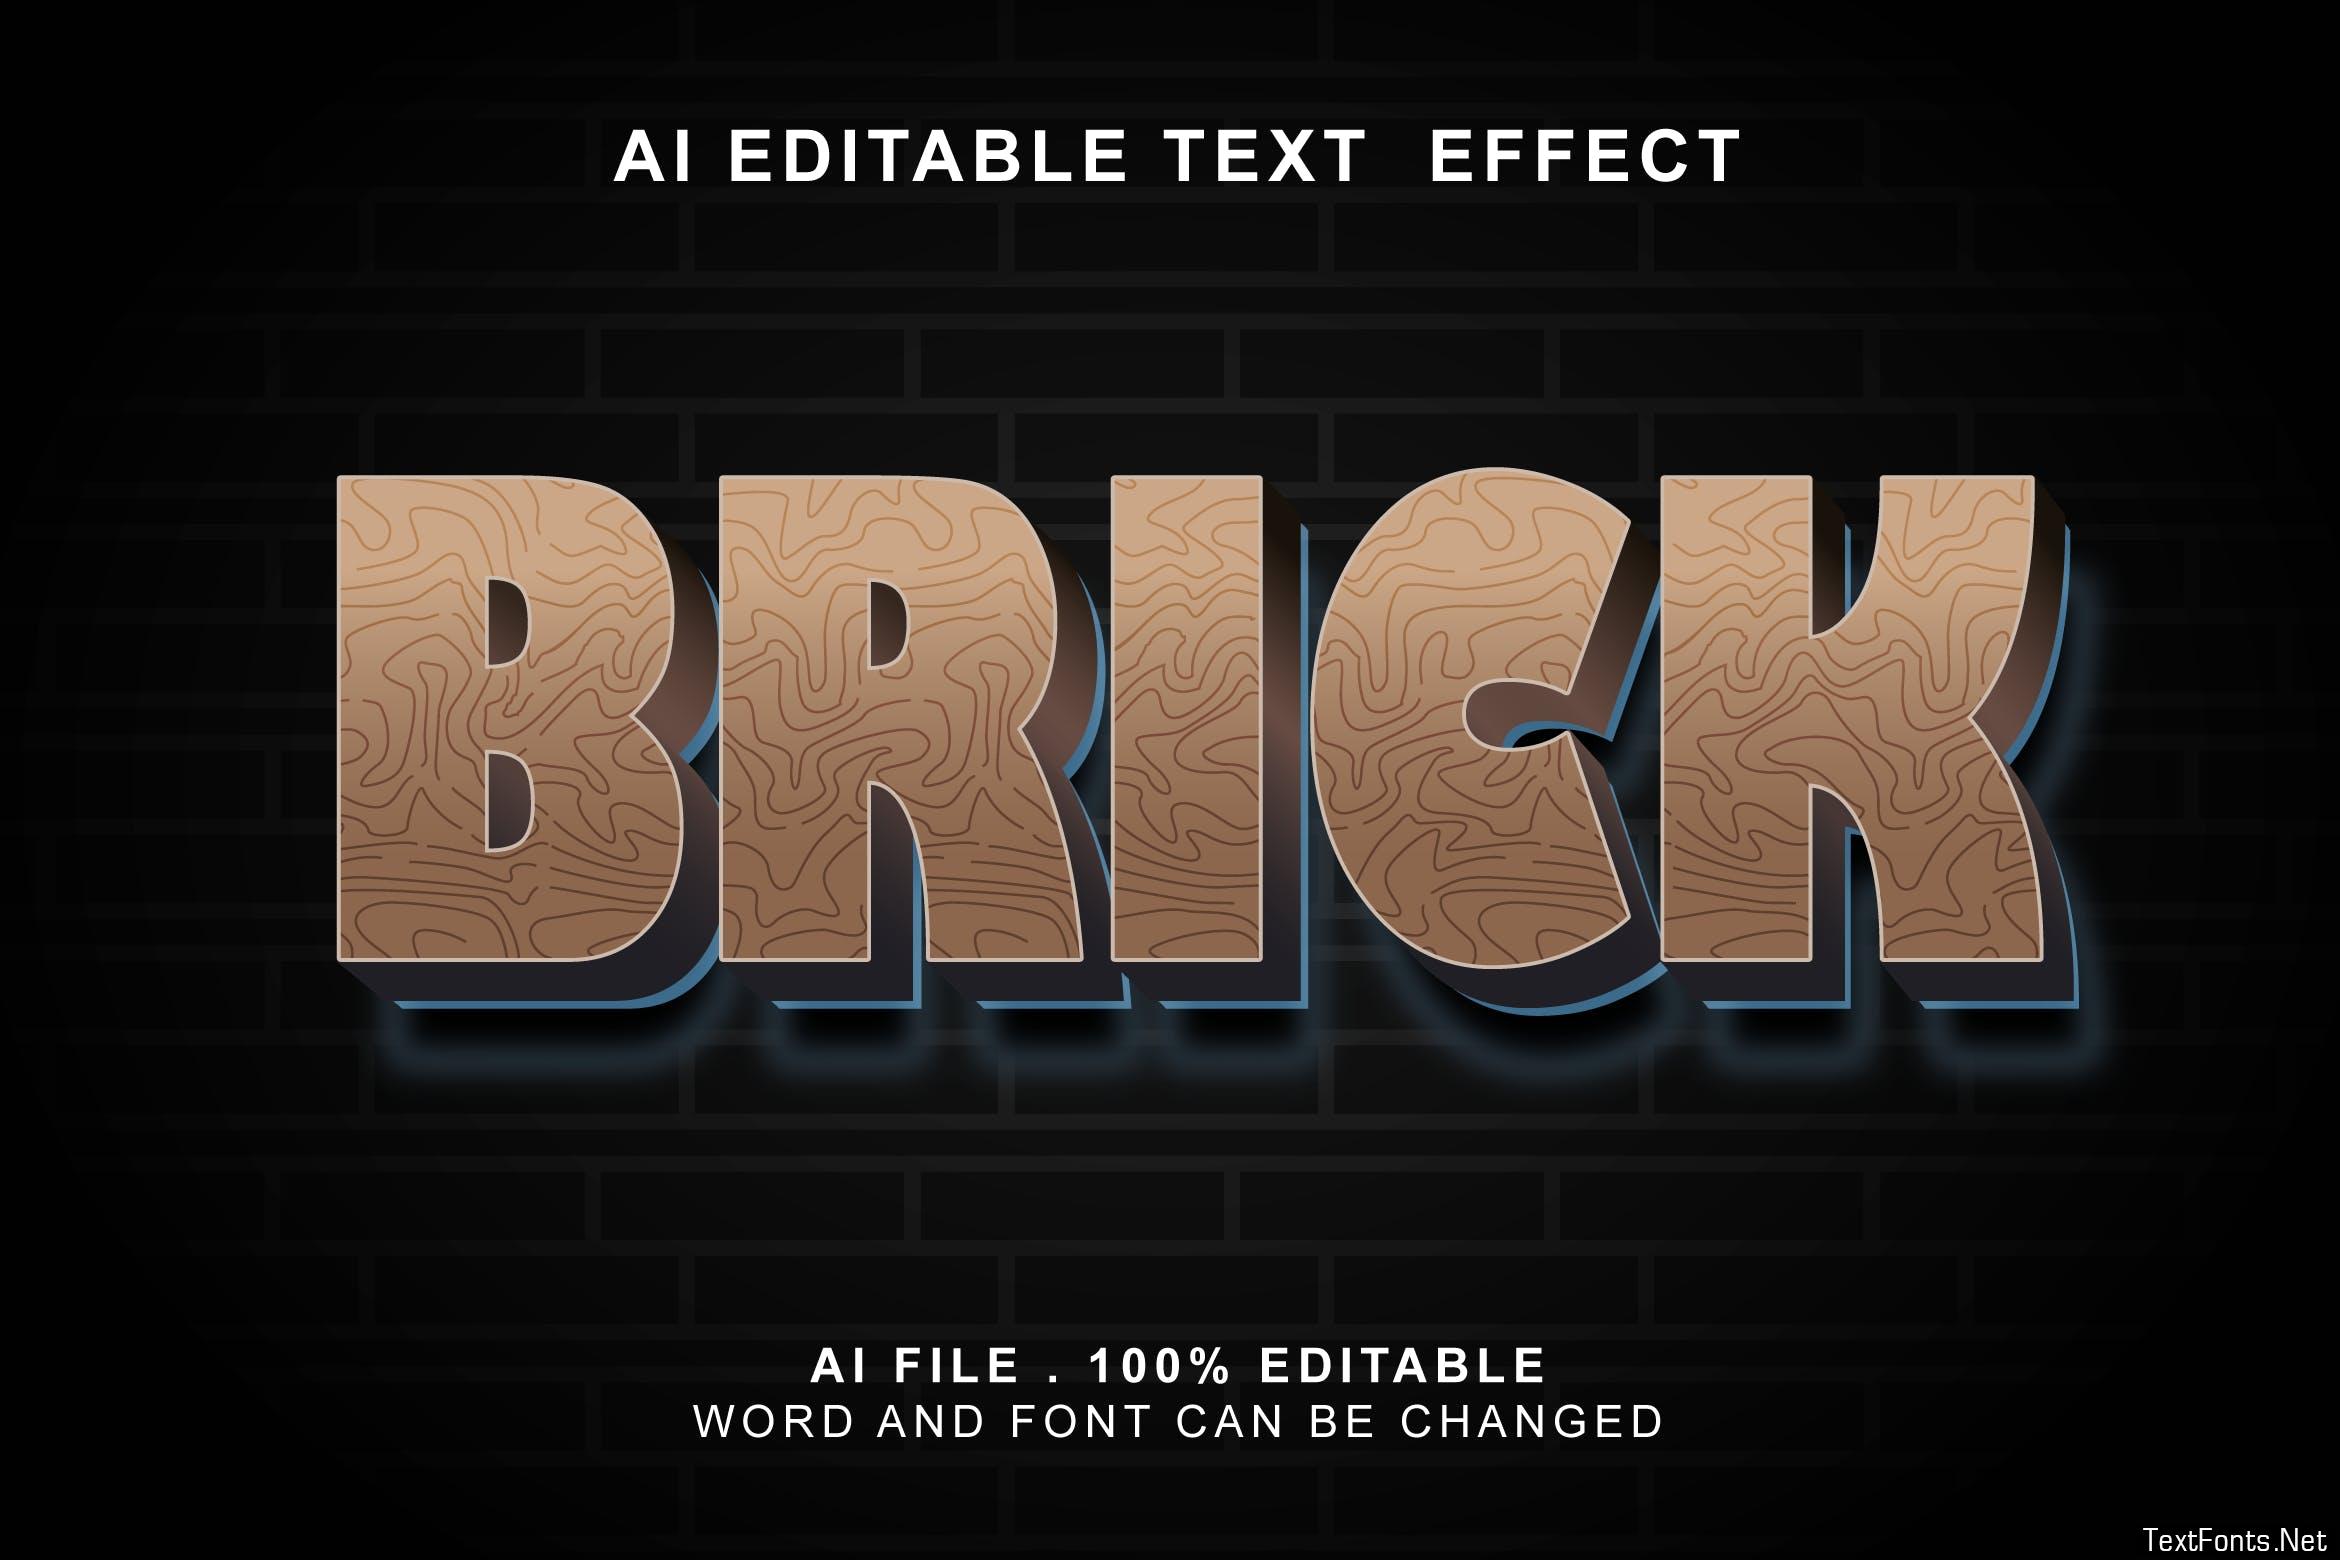 Brick 3d Text Effect